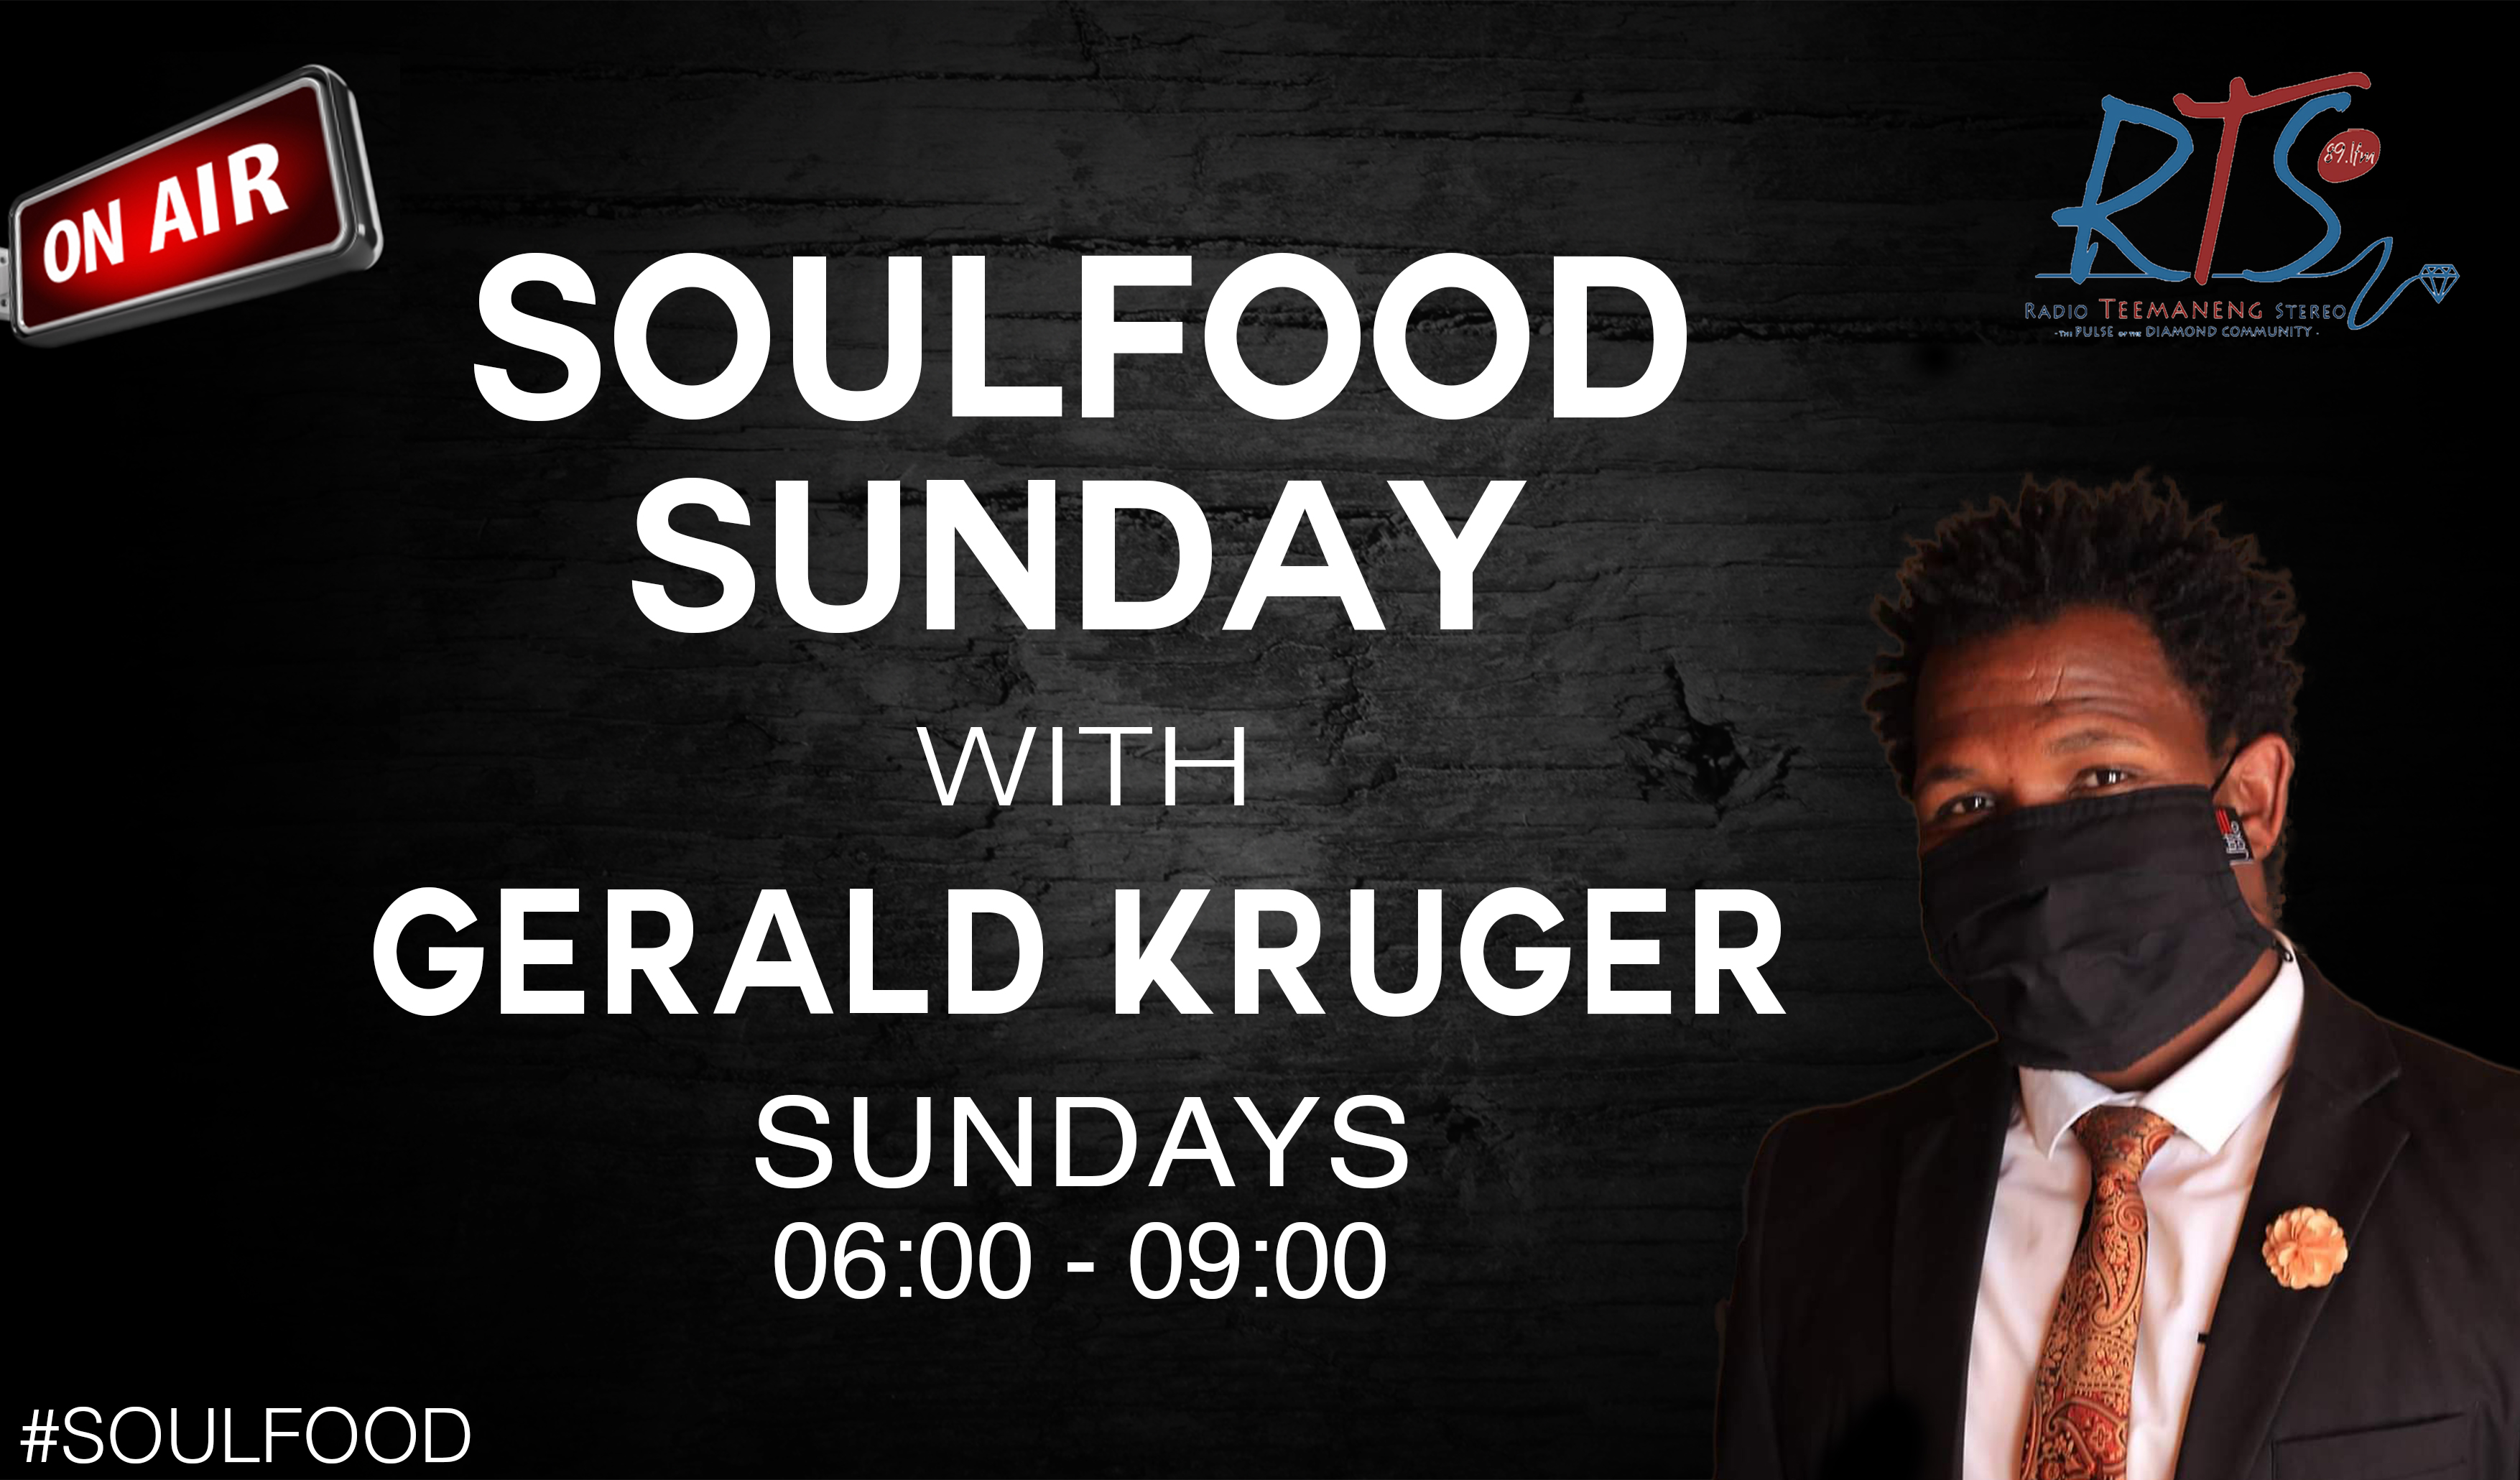 SouldFood Sunday
Sundays 06:00 - 09:00